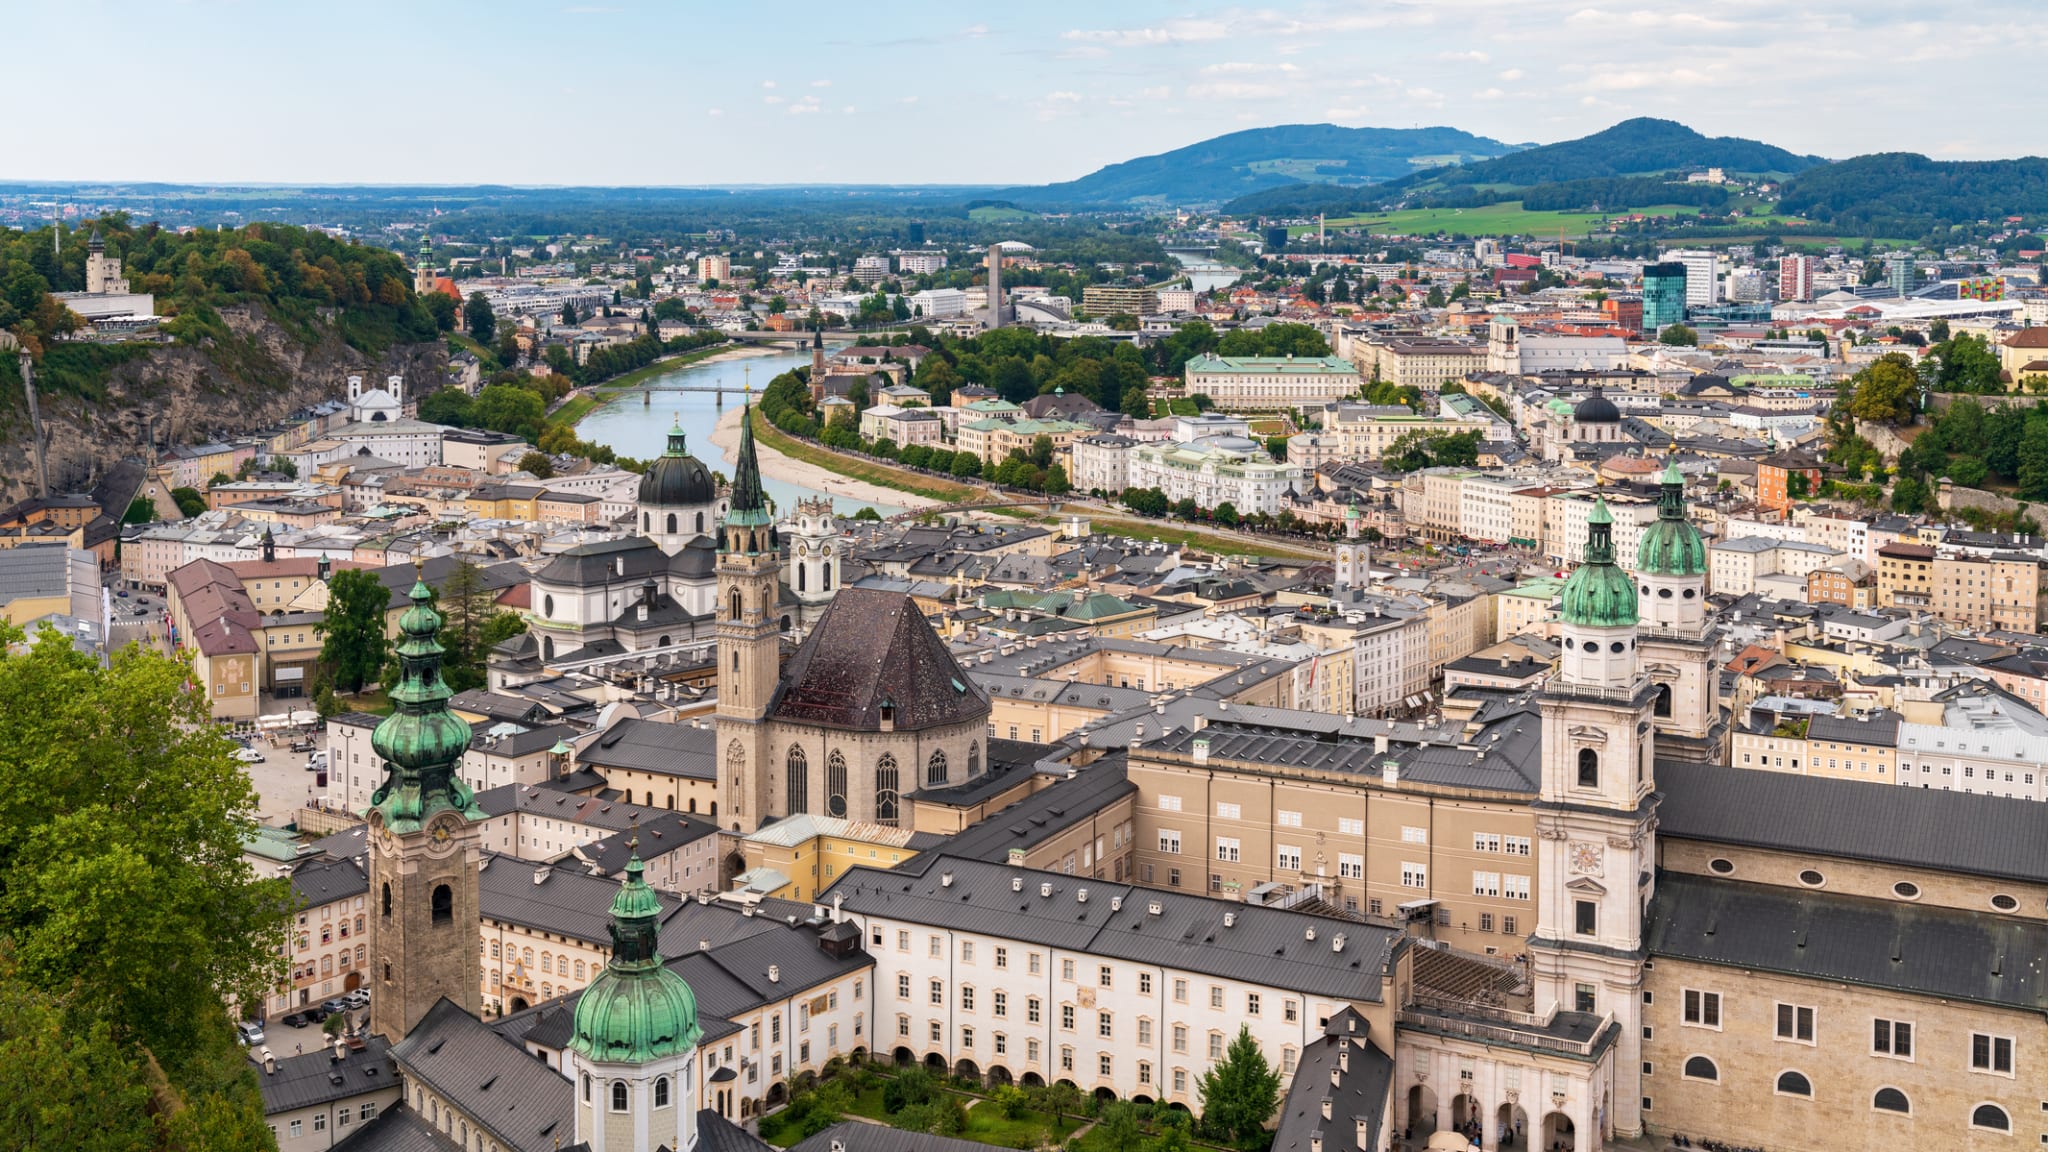 Salzburger Altstadt, Österreich © Oleg Sibiriakov/iStock / Getty Images Plus via Getty Images